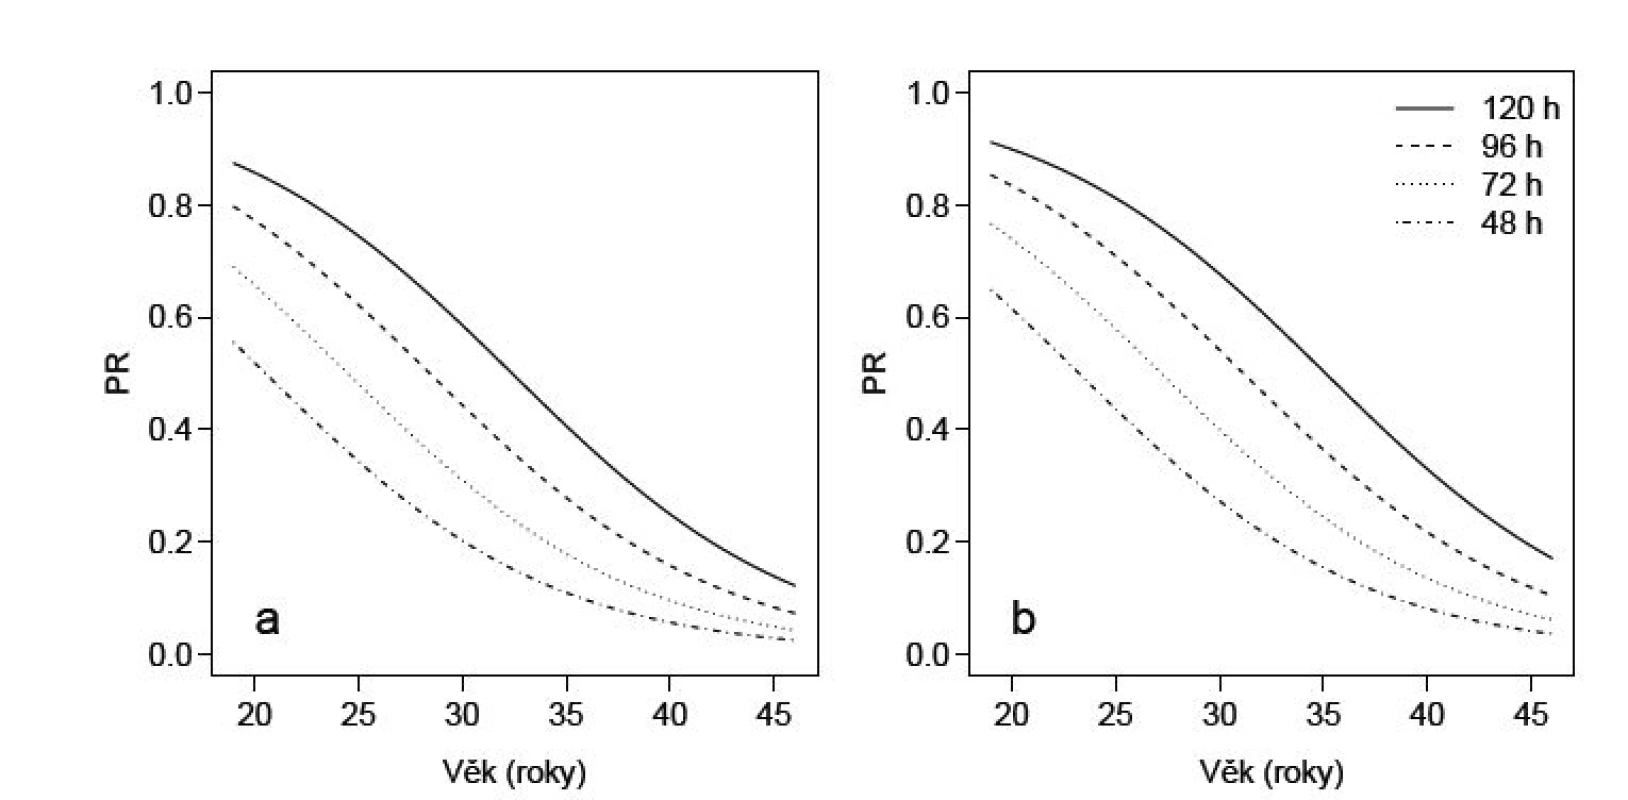 Závislost pravděpodobnosti otěhotnění na věku, době kultivace a aplikaci EG u pacientek bez EG (a) a s EG (b), jak ji předpovídá
nejlepší model pro pacientky stimulované lagon a s průměrným počtem oocytů